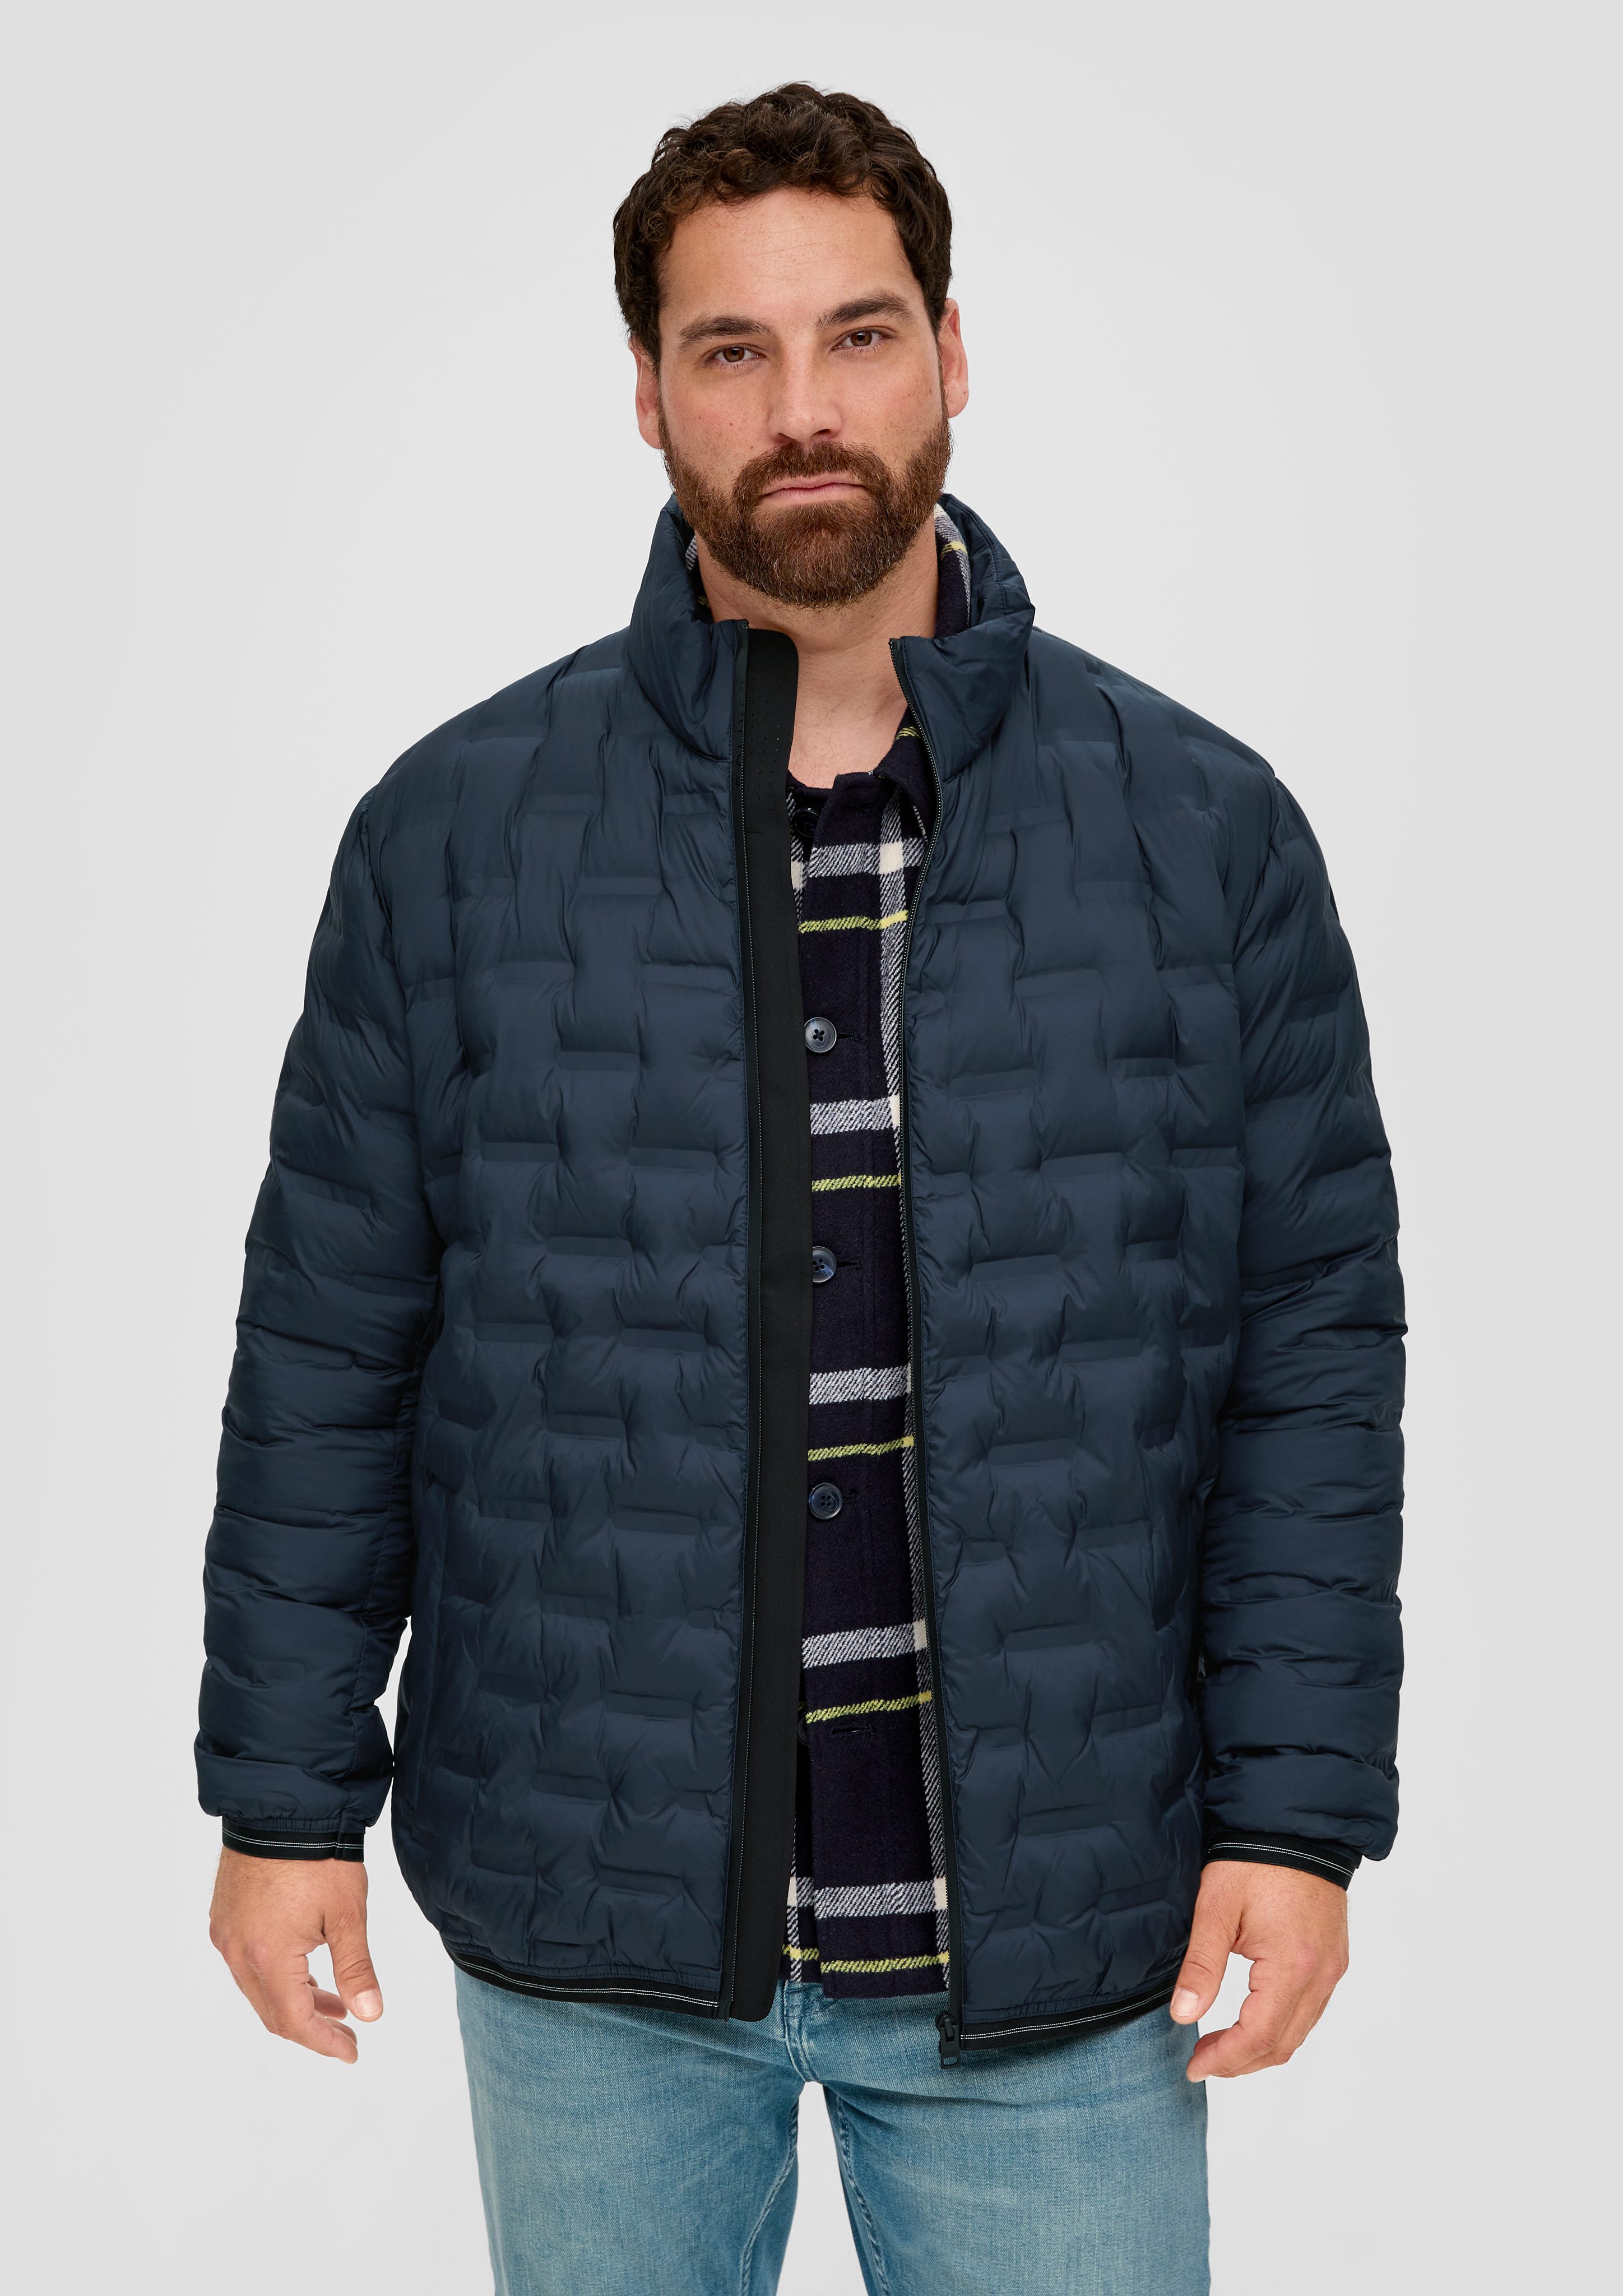 s.Oliver Outdoorjacke Jacke mit Reißverschlusstaschen Applikation navy | Jacken